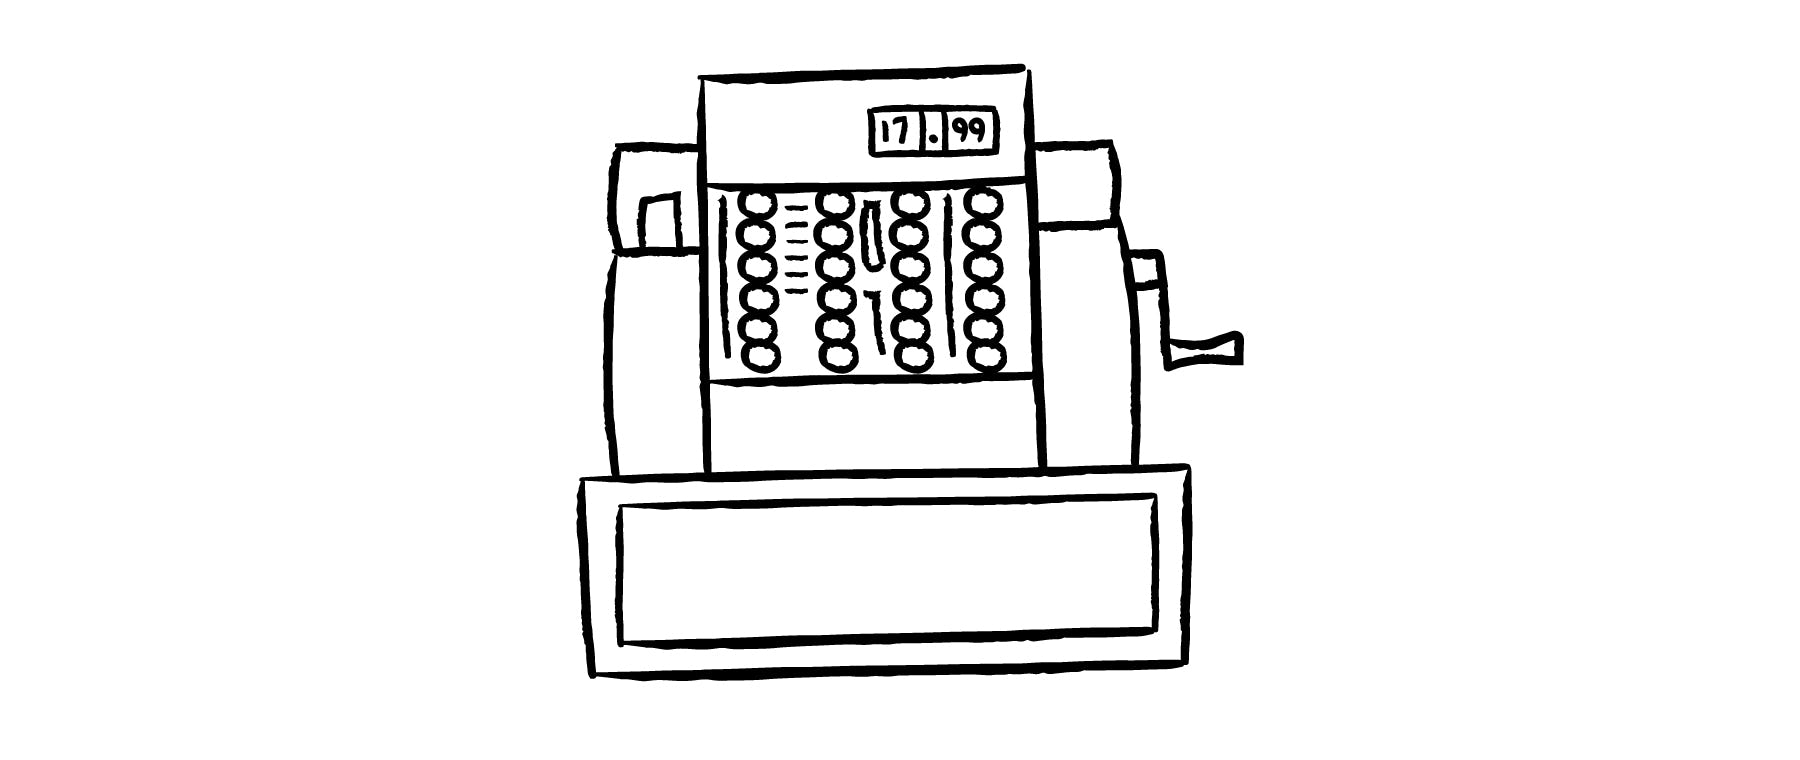 Illustration of old-fashioned cash register